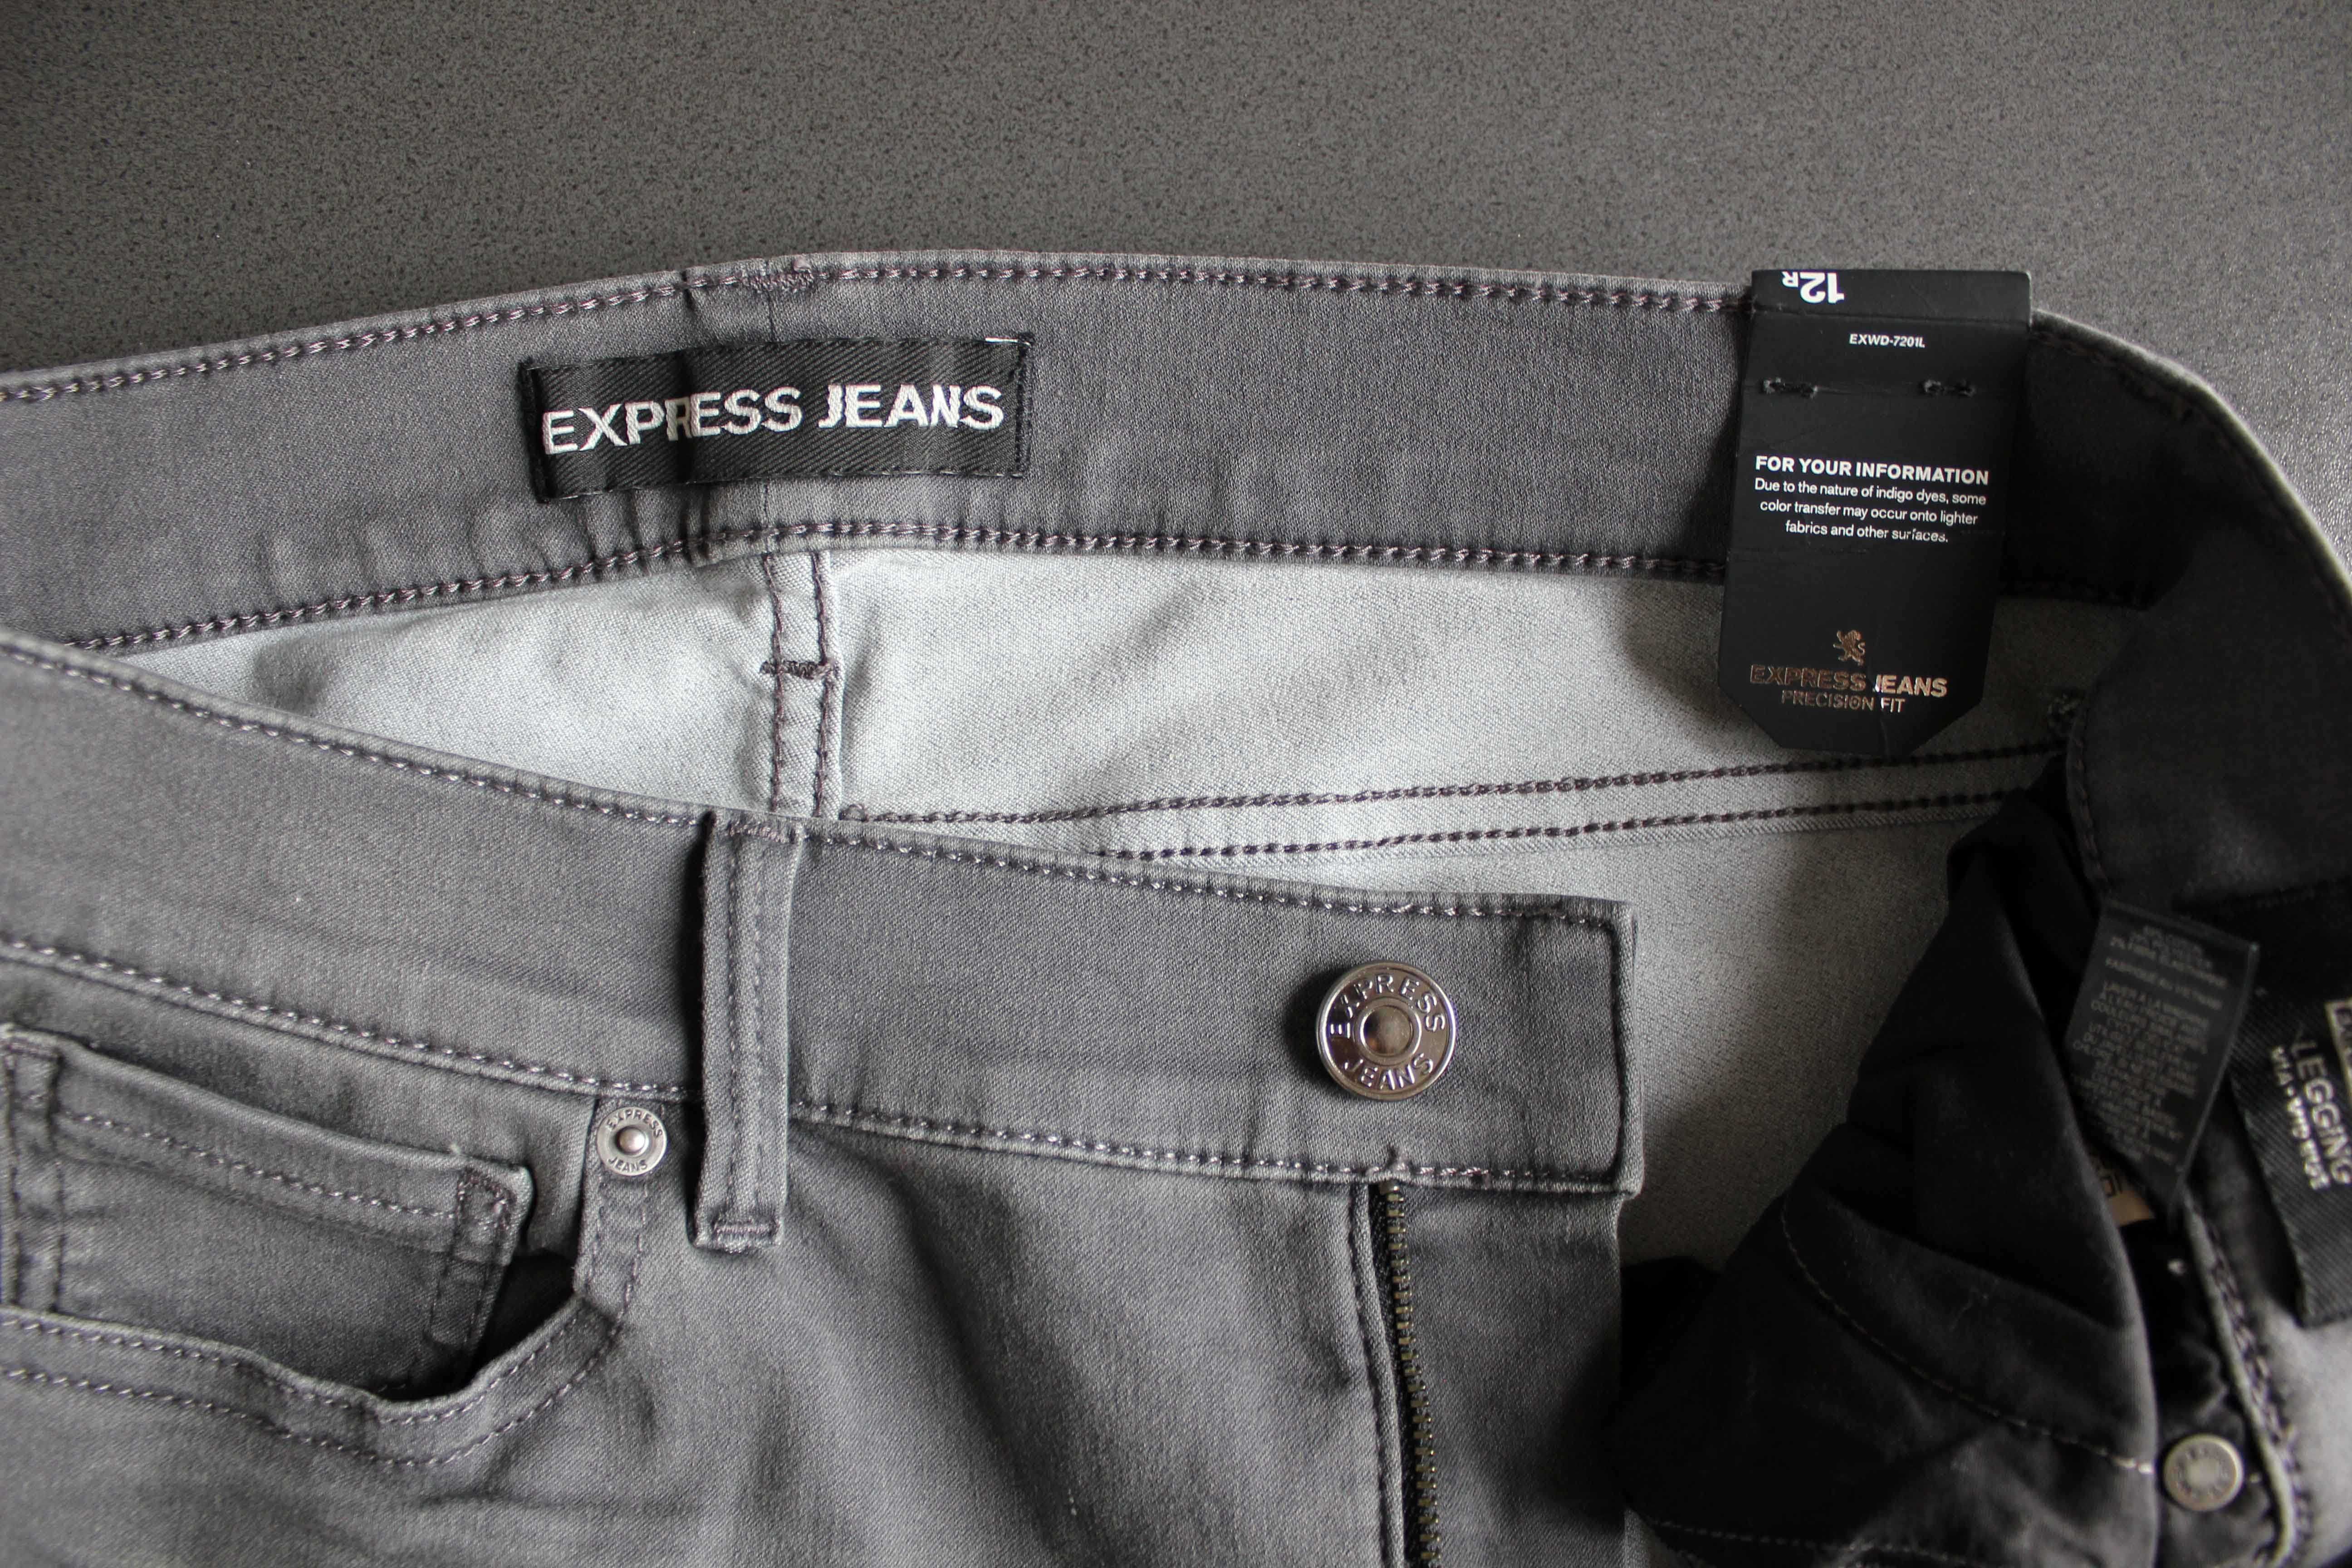 Джинсы жен. Express Jeans, США, размер 12 R (52-й), новые!